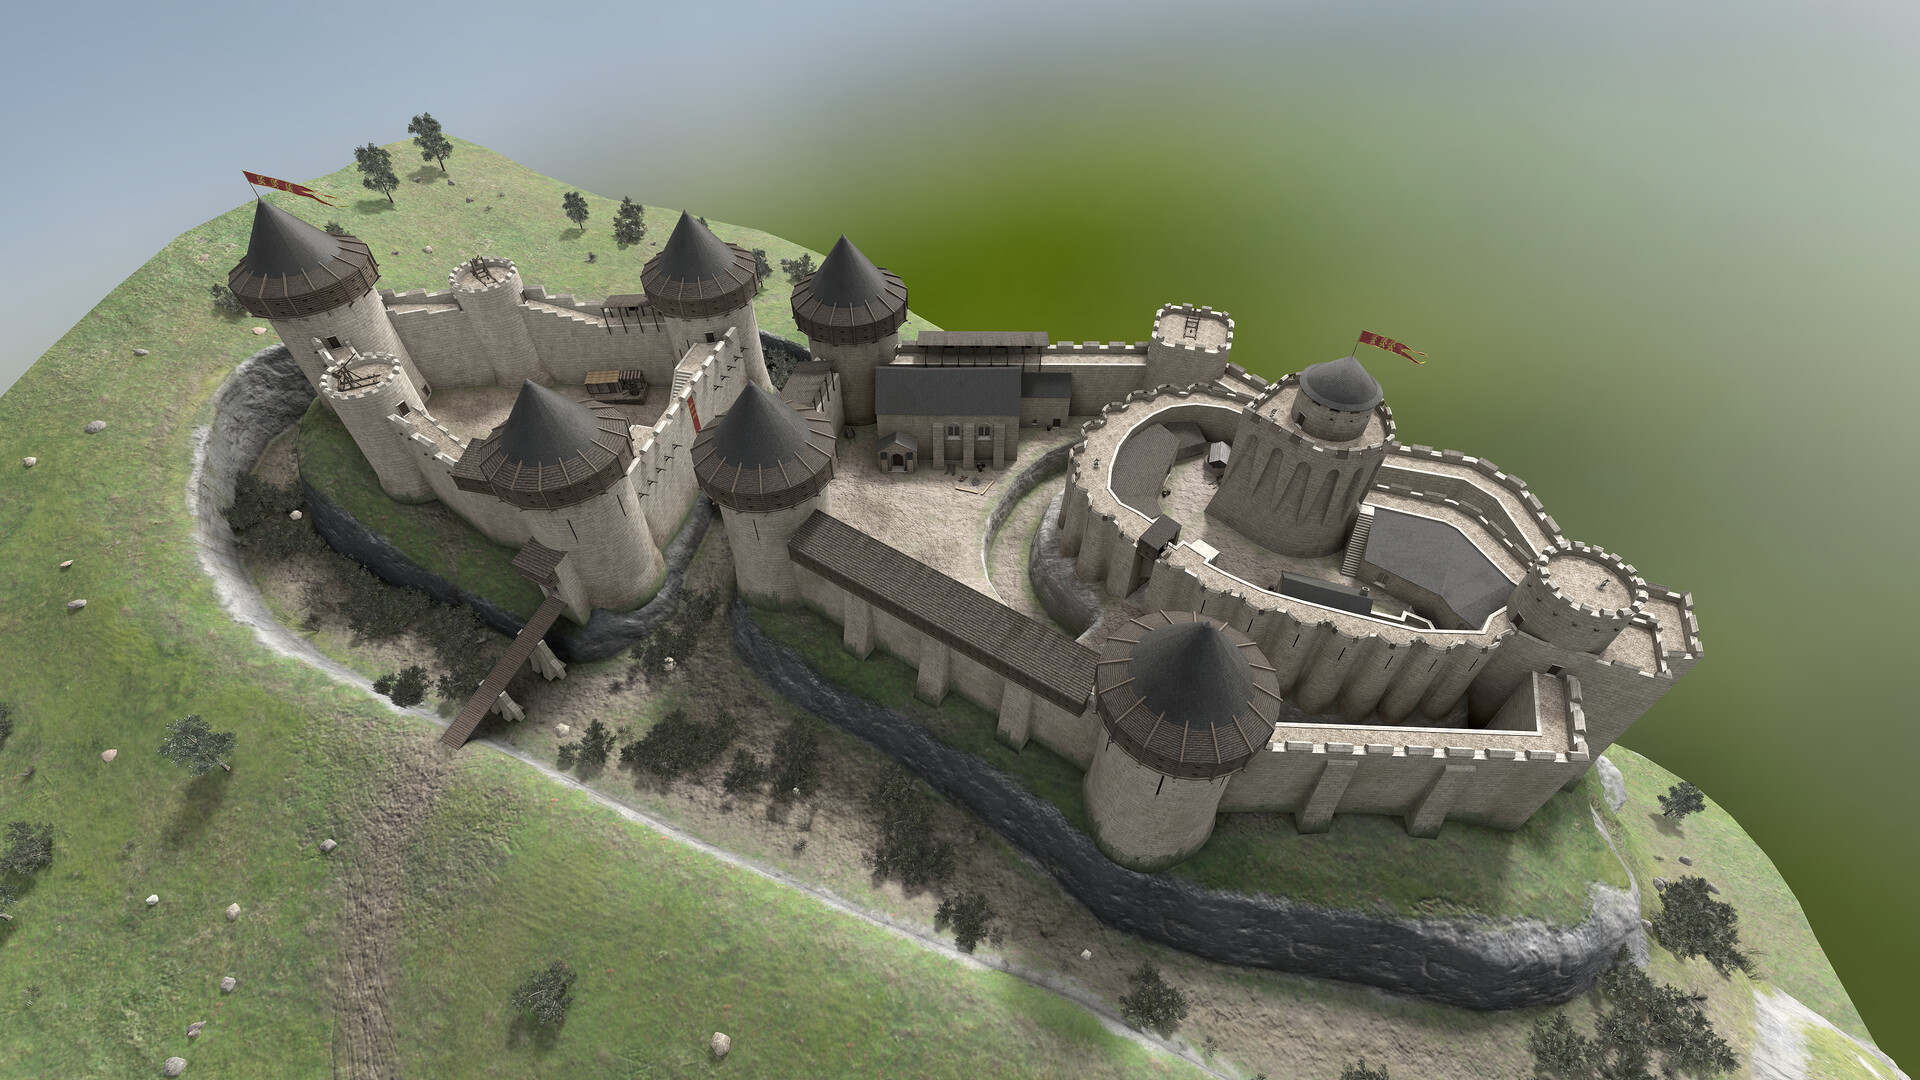 Шато-Гайар замок во Франции